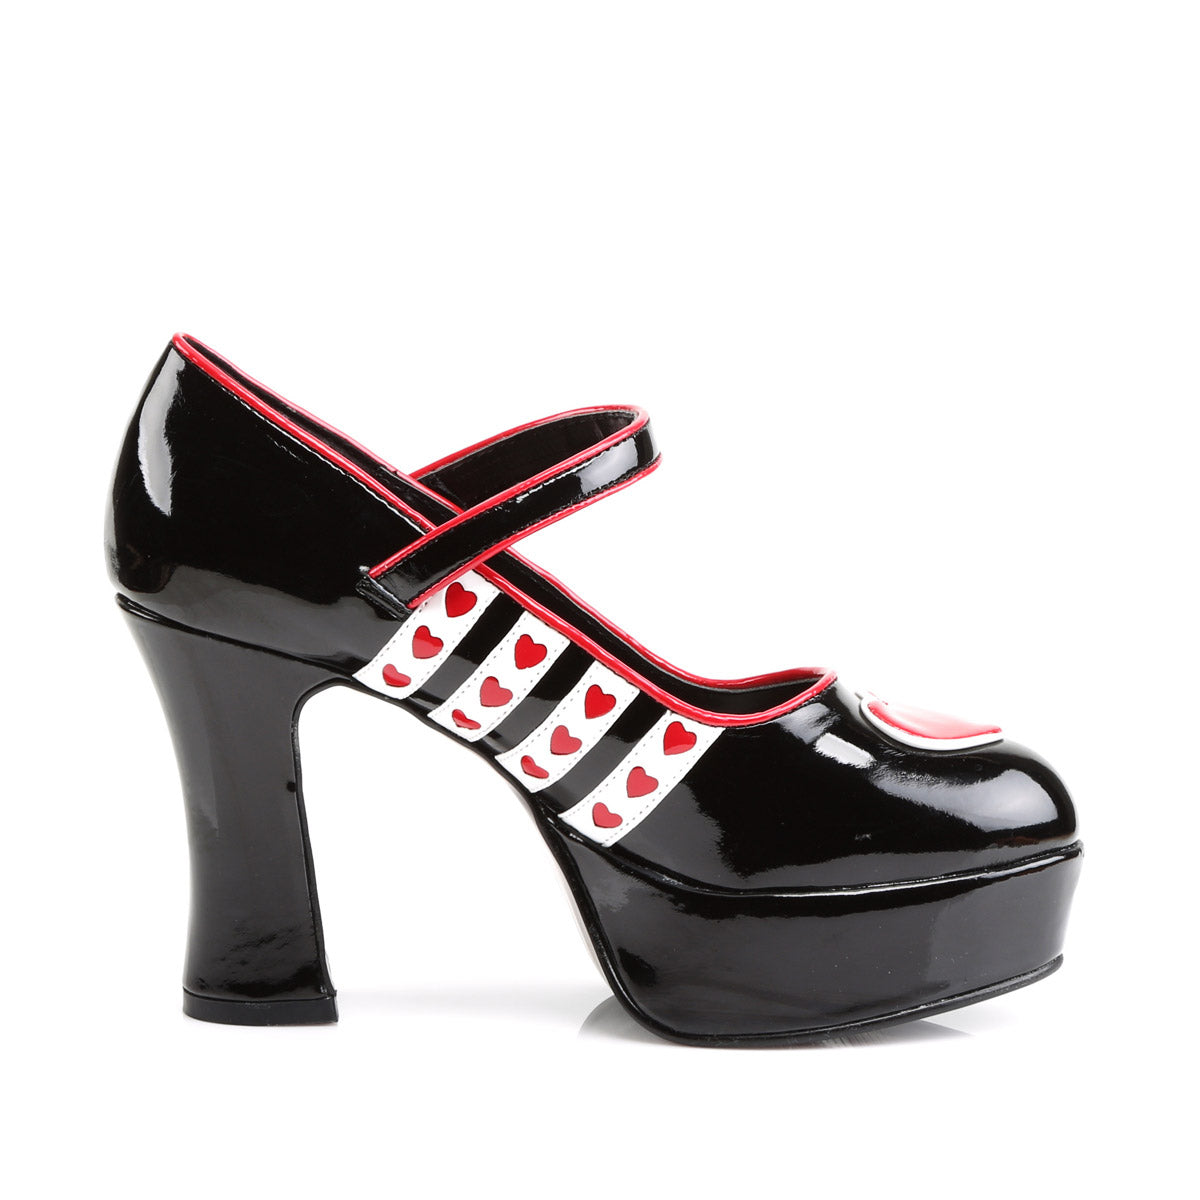 Queen Of Hearts Hidden Platform Mary Jane Pumps High Heels Shoes Pleaser Funtasma QUEEN/55